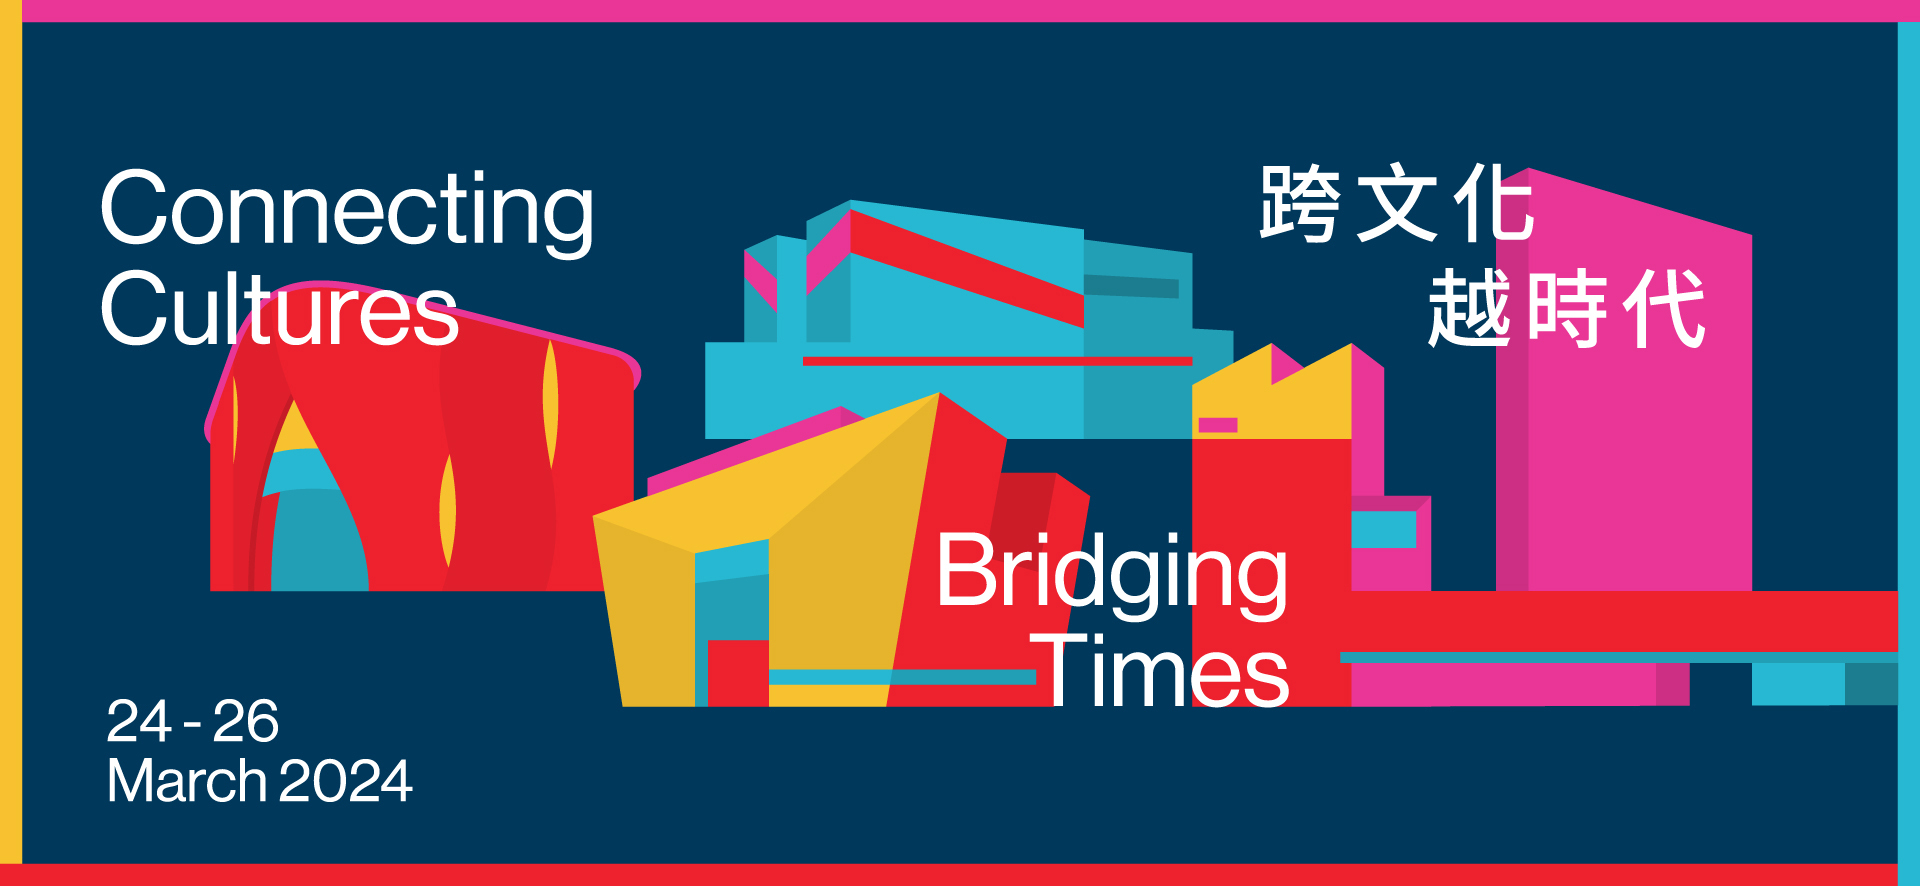 香港国际文化高峰论坛2024 - 跨文化 越时代